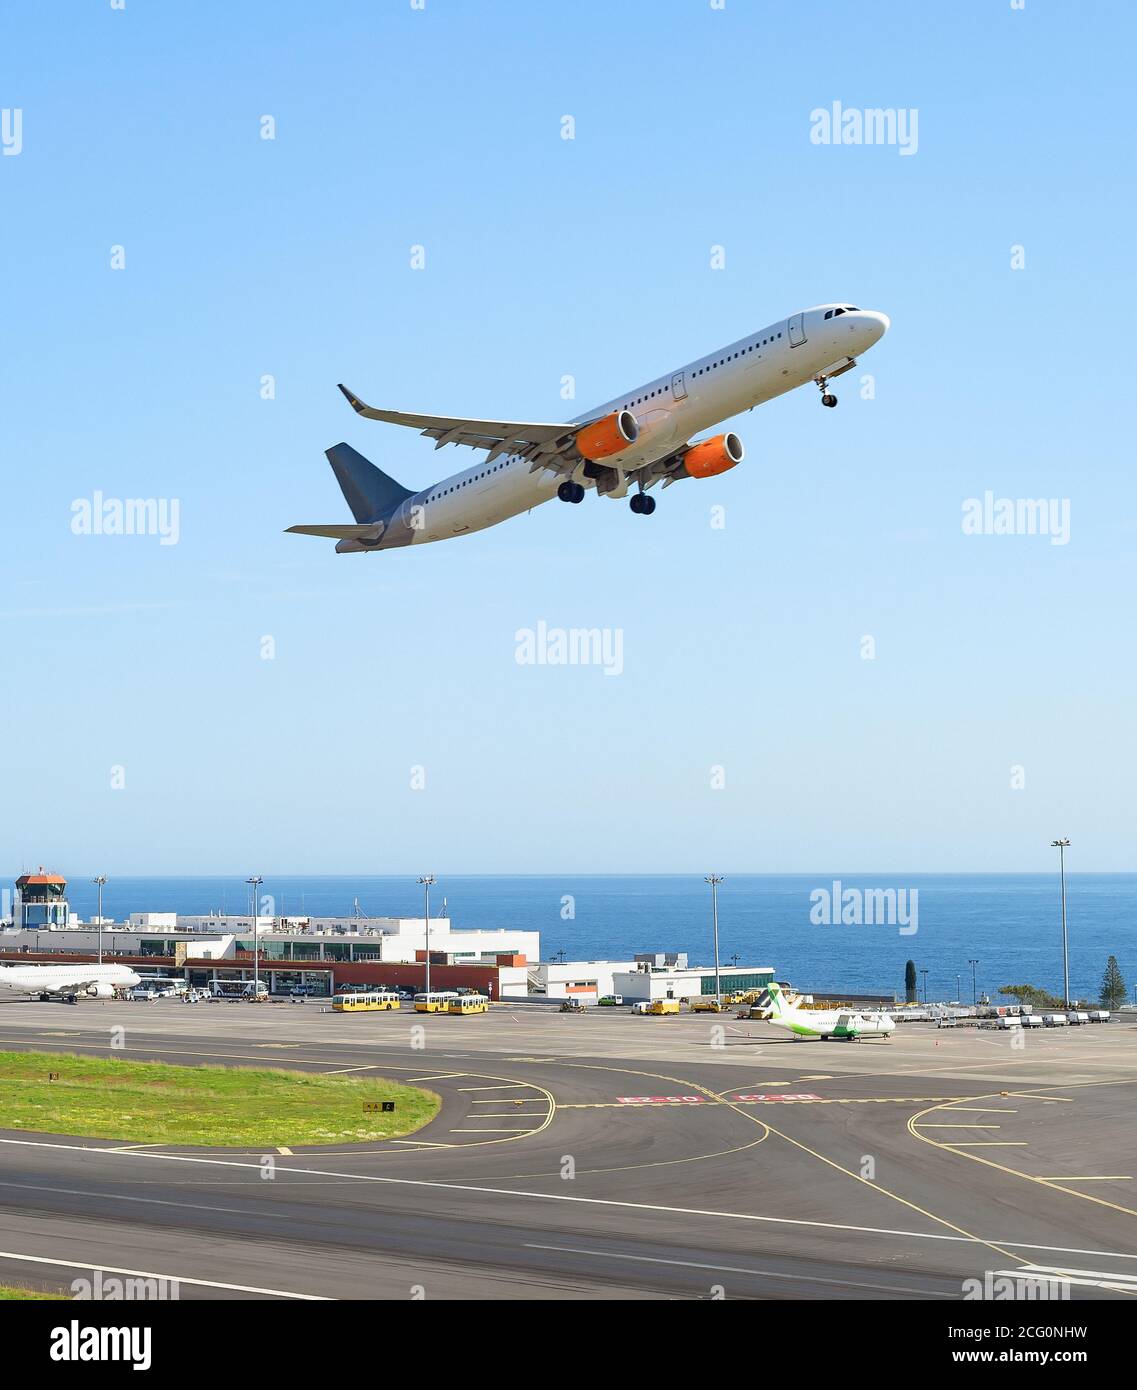 Avión despegando de la pista de aterrizaje en el aeropuerto internacional de Madeira, la construcción de la terminal y el paisaje marino en el fondo, Portugal Foto de stock